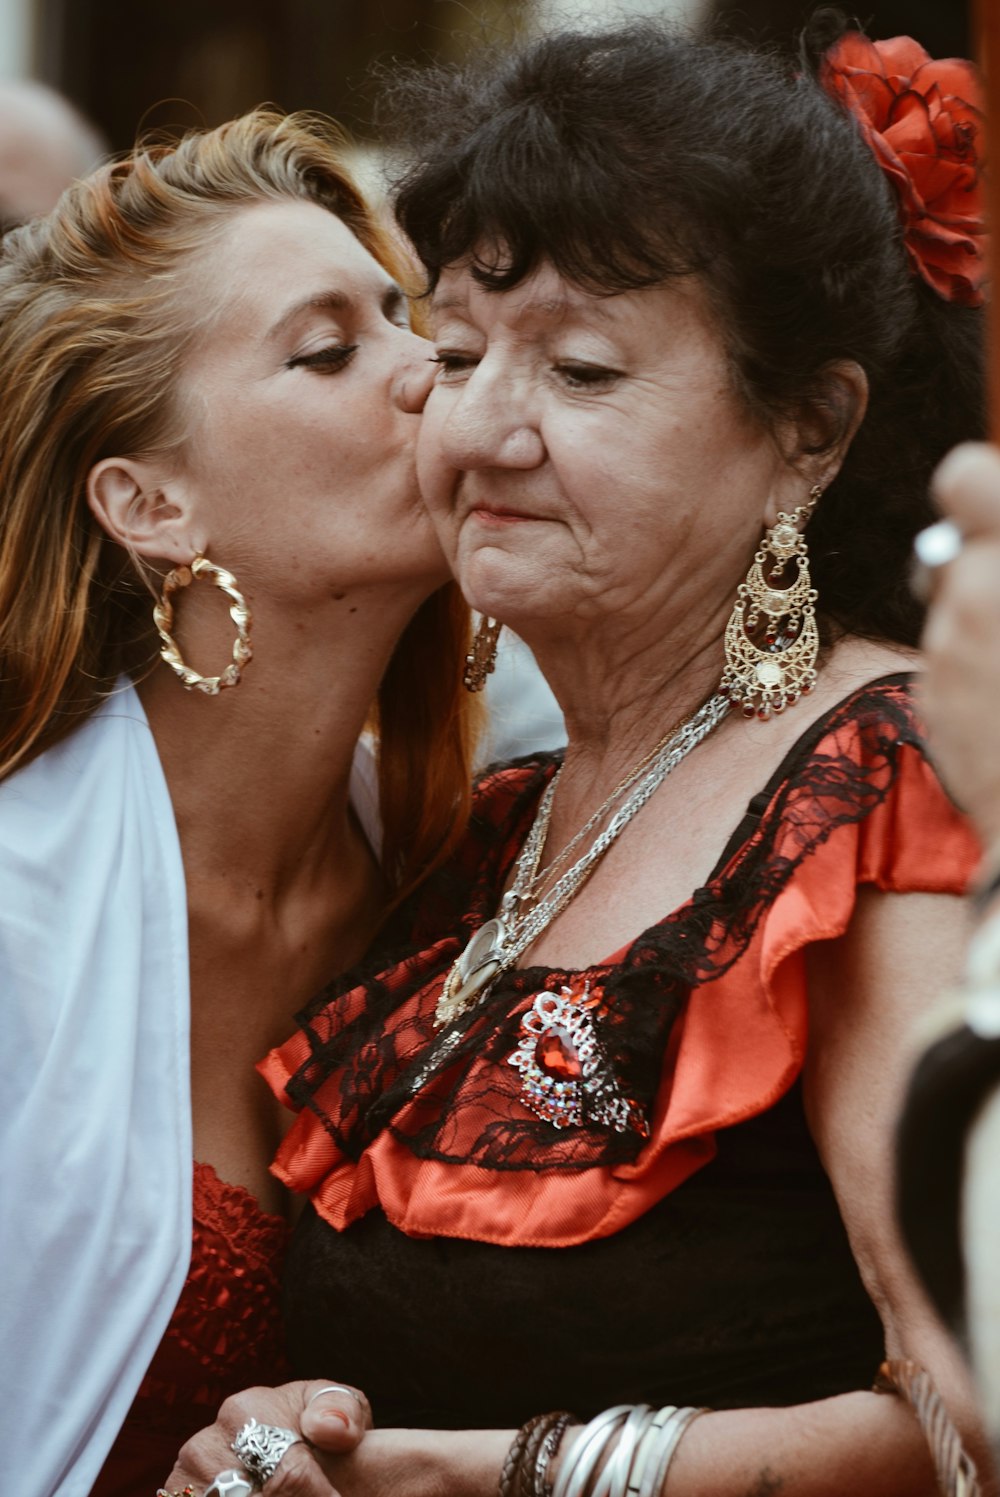 Frau in rotem und schwarzem Blumenkleid küsst Frau in weißem Kleid